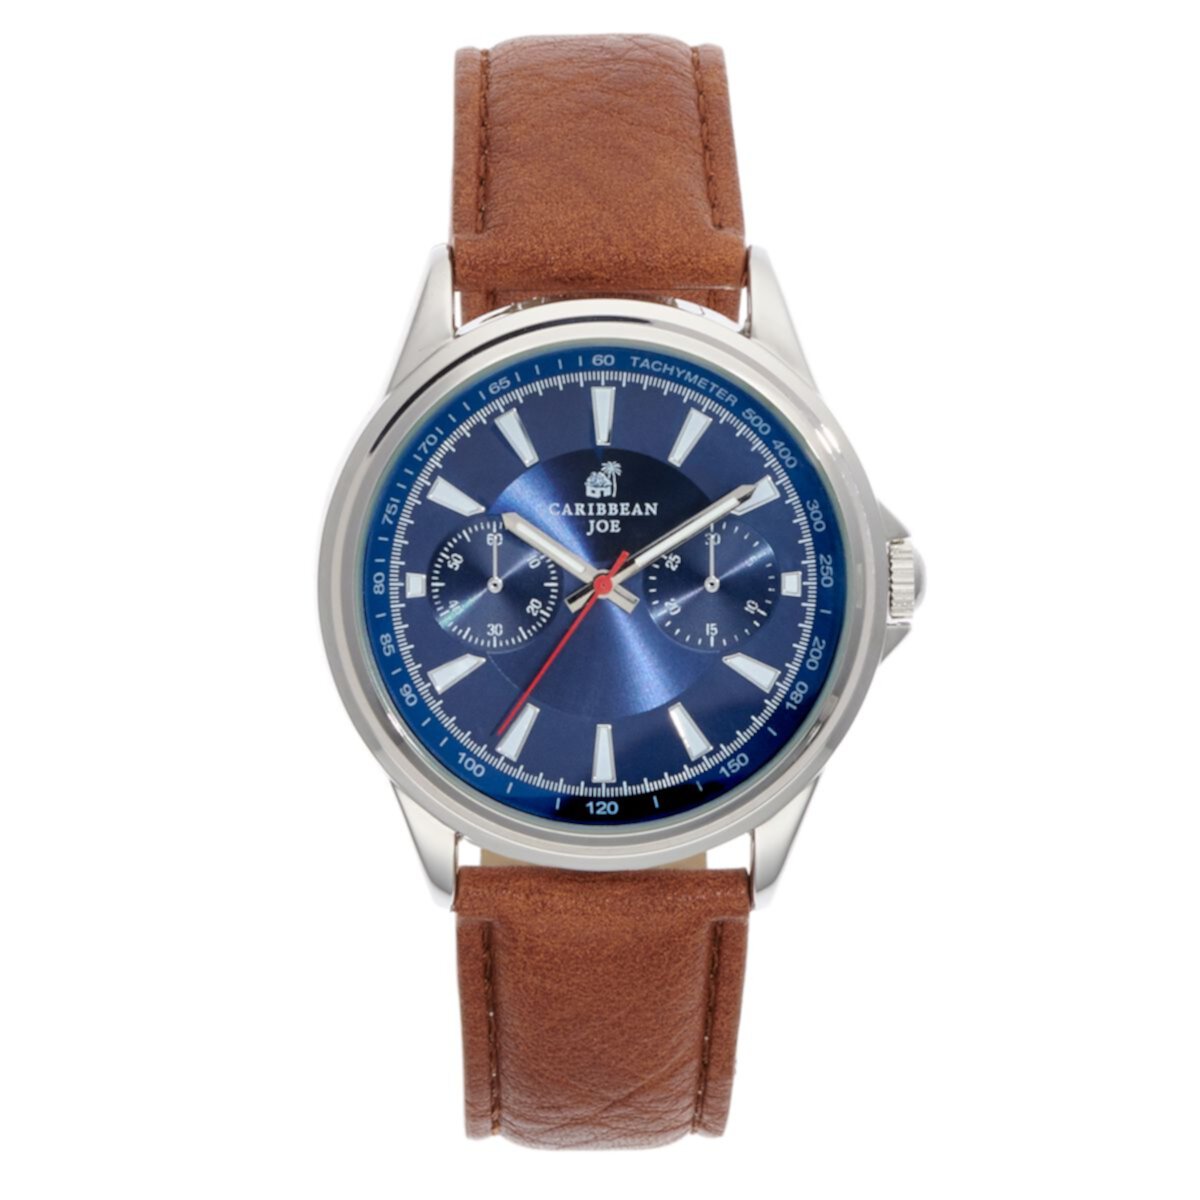 Мужские часы с коричневым ремешком серебристого цвета Caribbean Joe - CJ7108SL Caribbean Joe